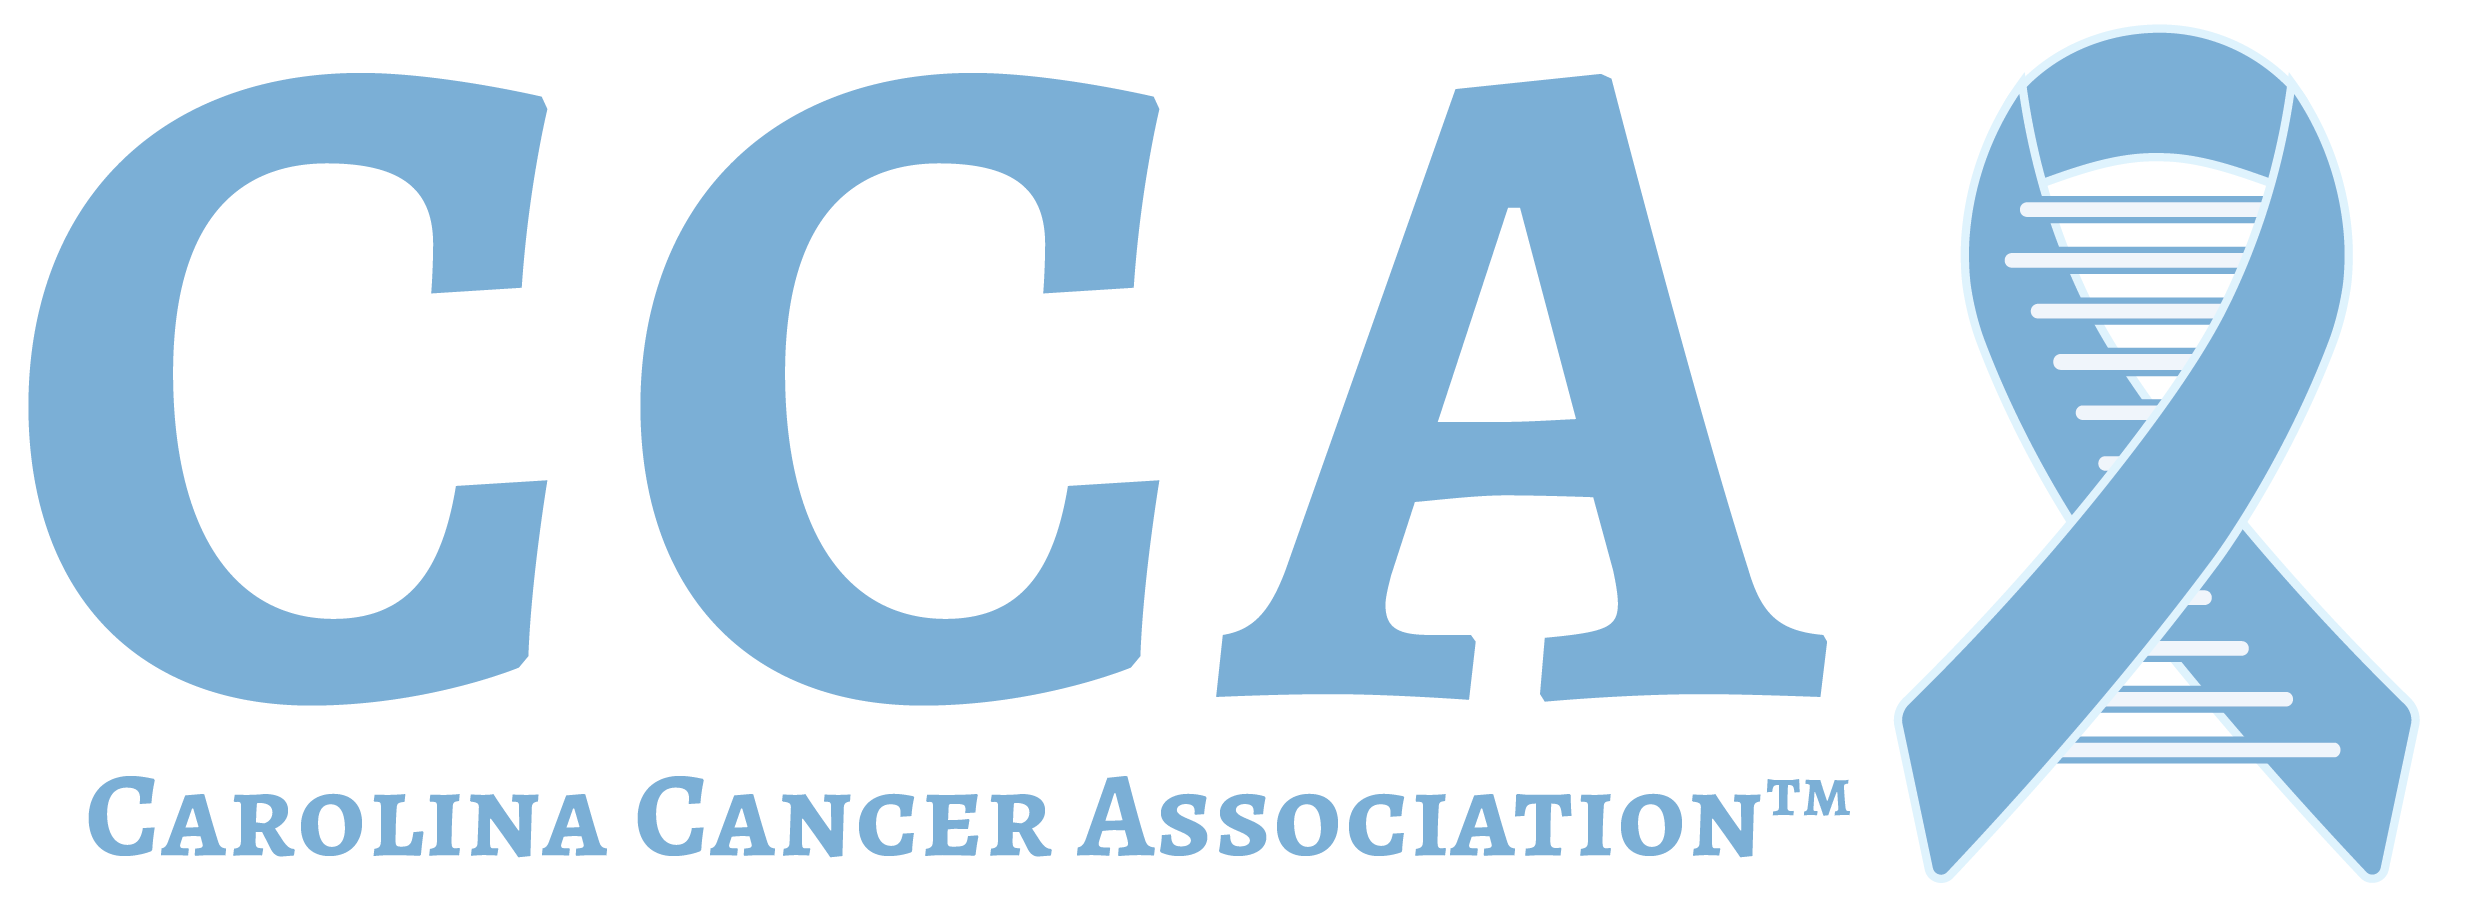 Carolina Cancer Association